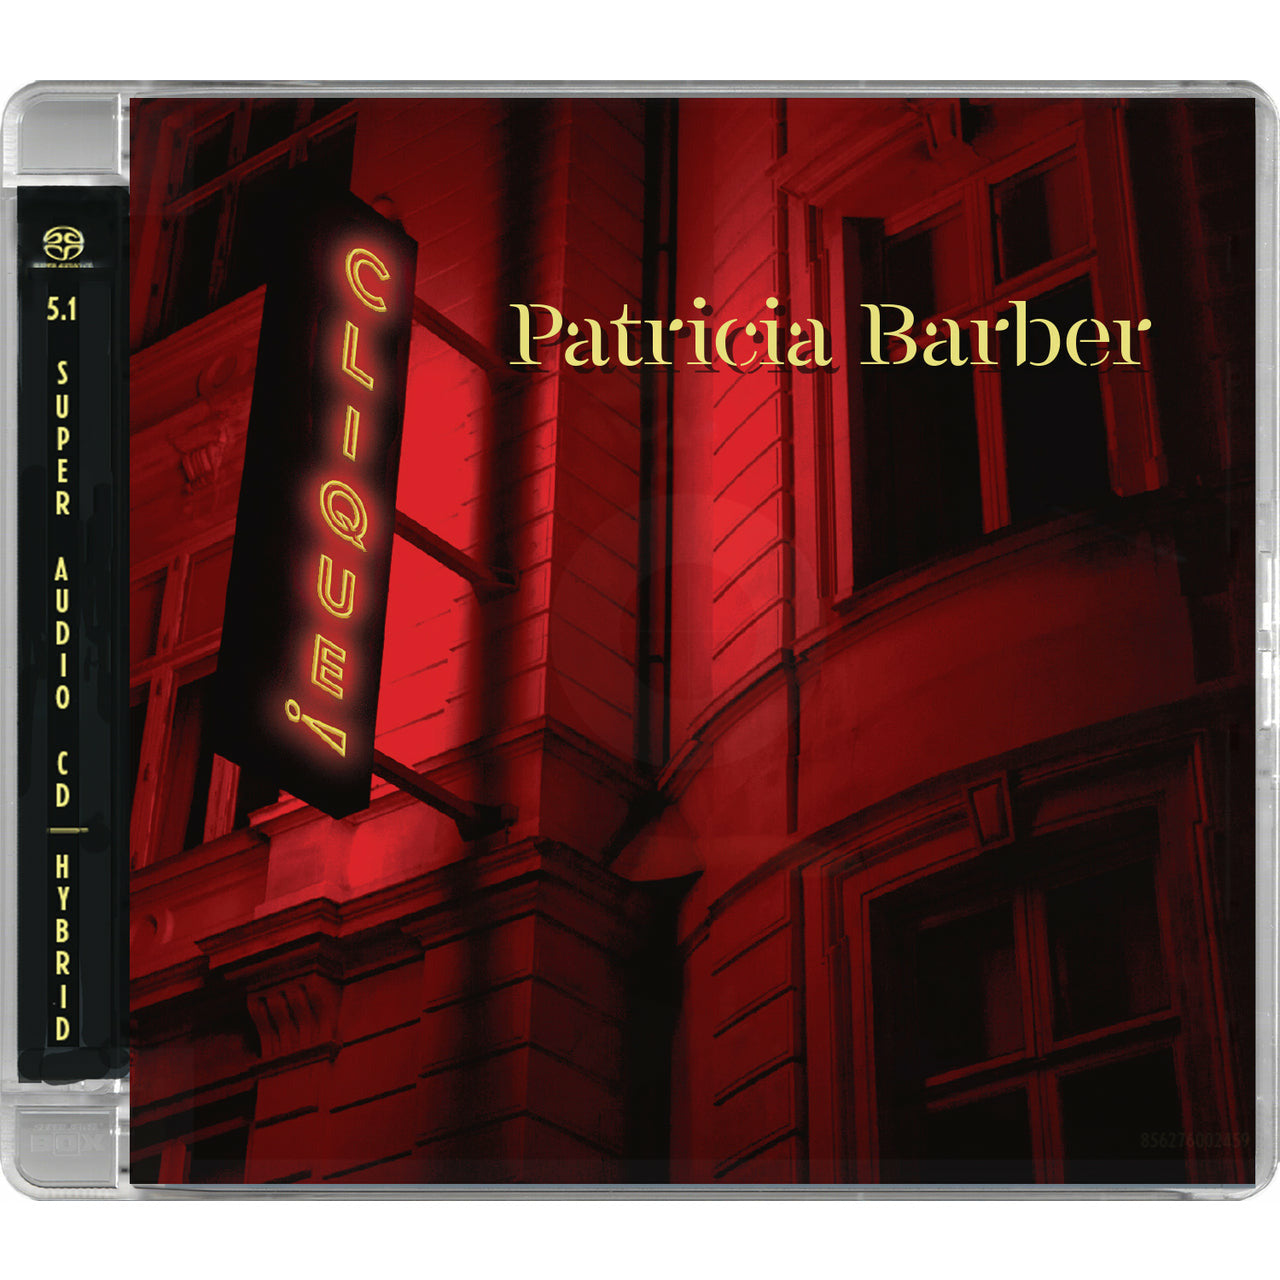 Patricia Barber Clique Híbrido Multicanal y Estéreo - SACD 